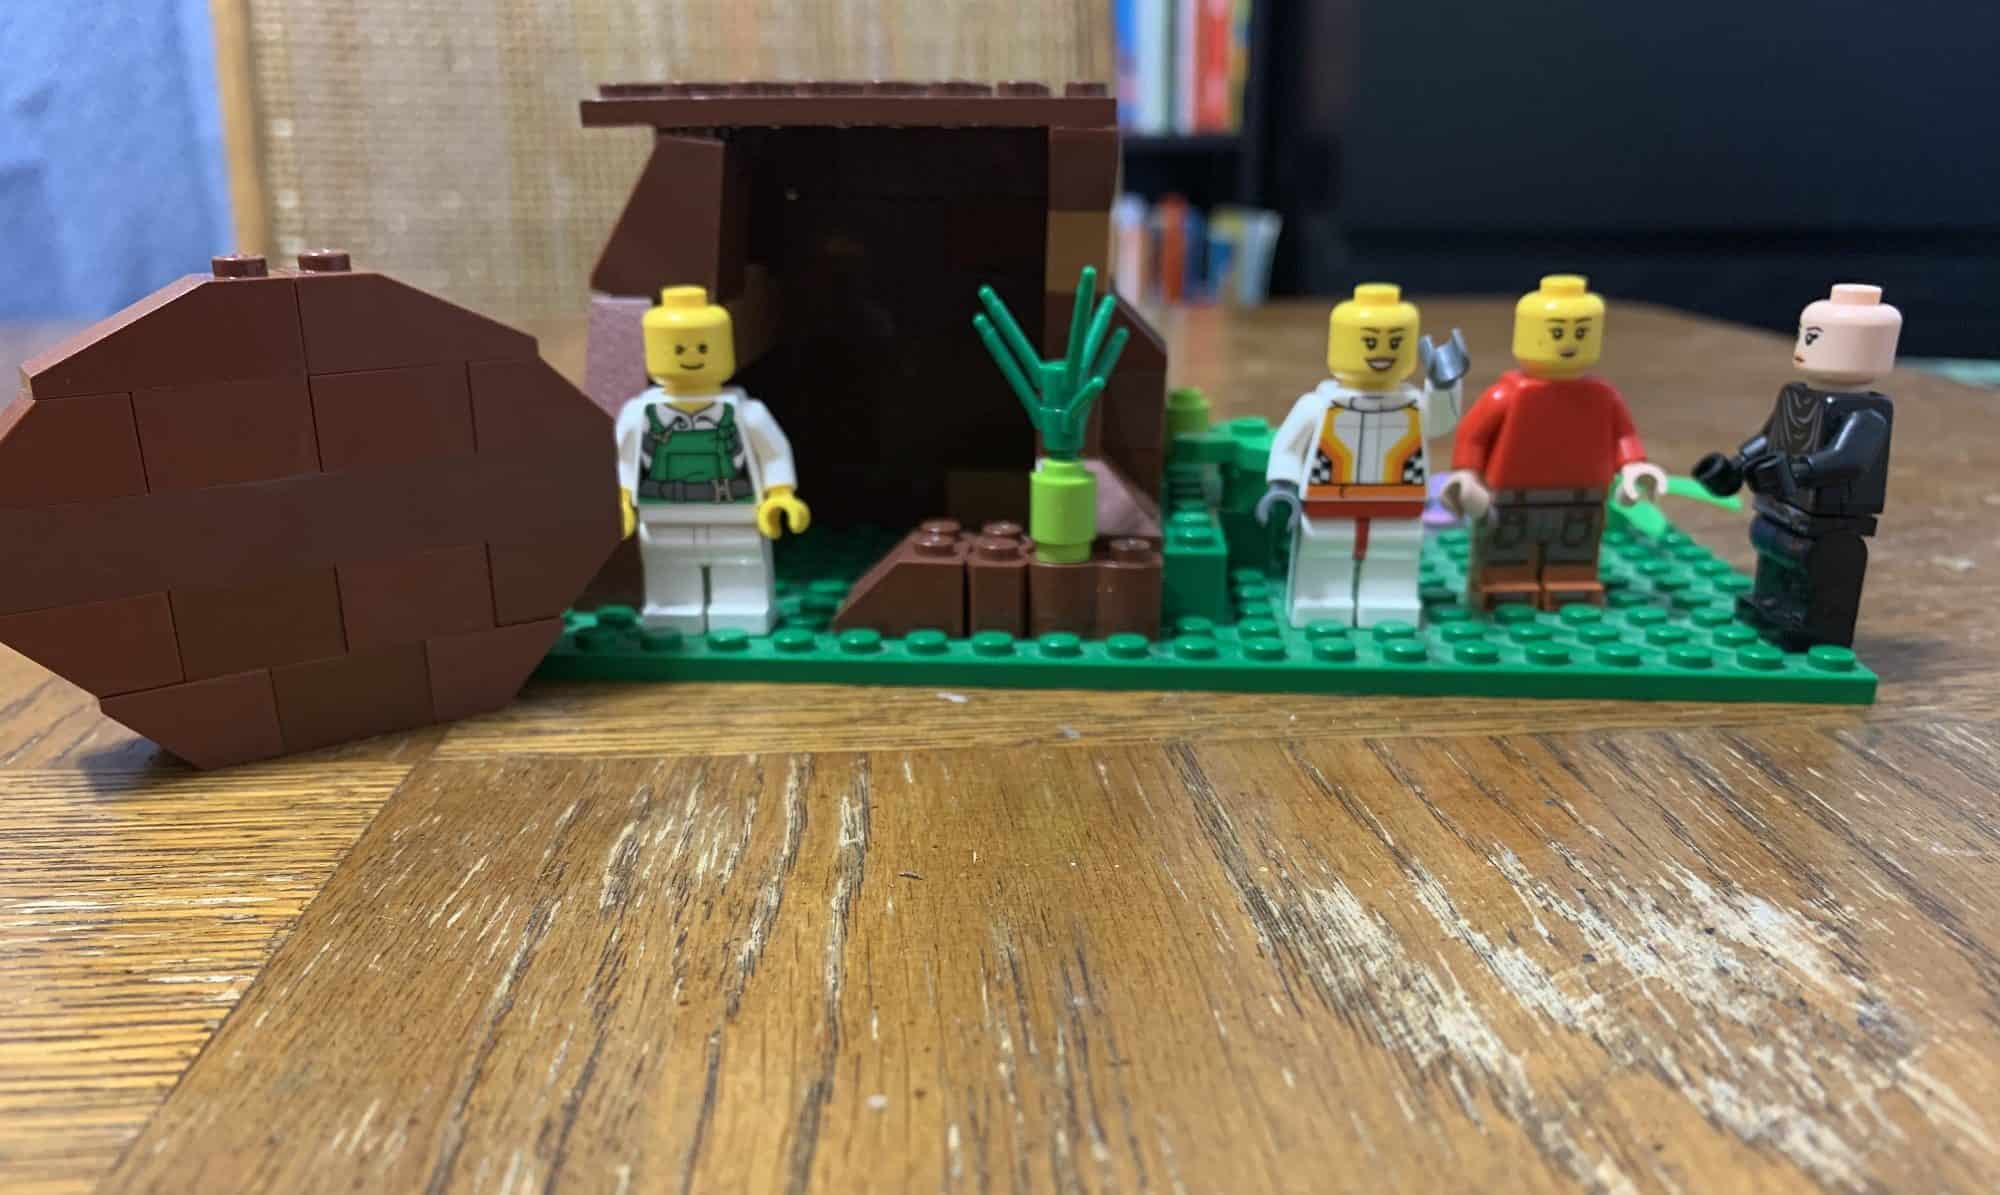 Easter empty tomb Lego scene